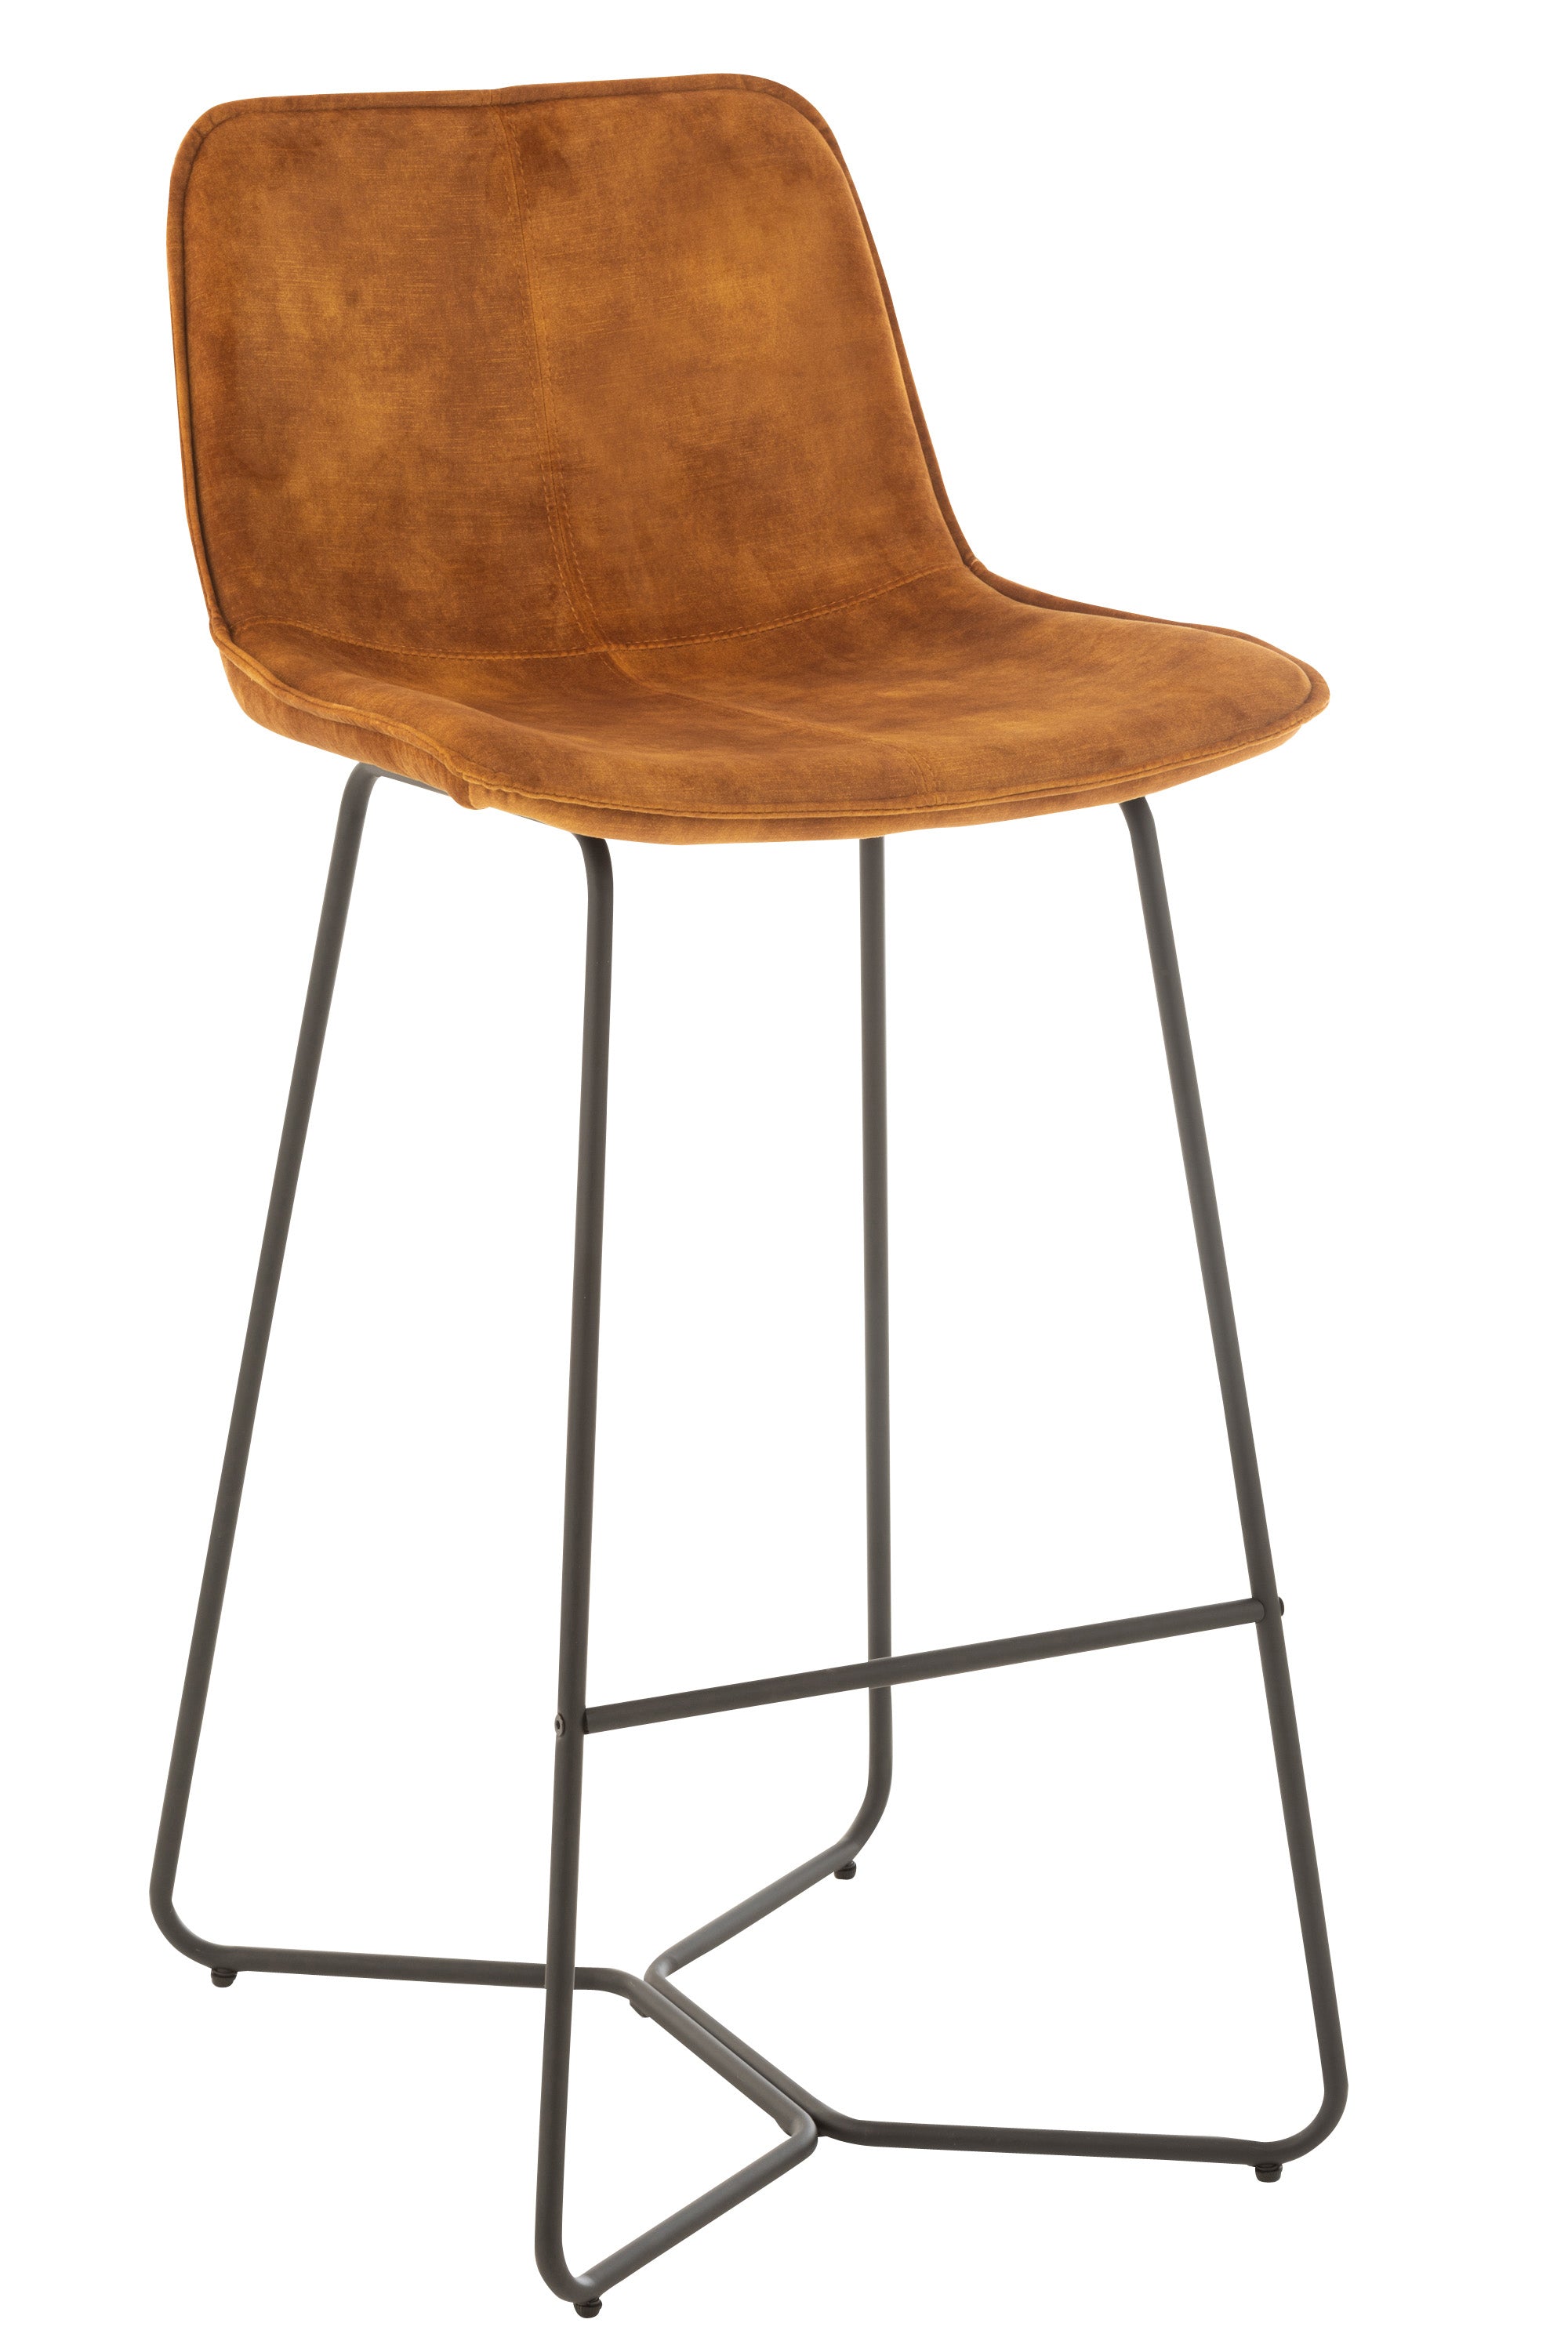 Barhocker in modernem Design, Sitzschale mit halbhohem Lehne, gepolstert, bezogen mit ockerfarbener Mikrofaser auf einem kufenartigen Gestell aus schwarzem Eisen.